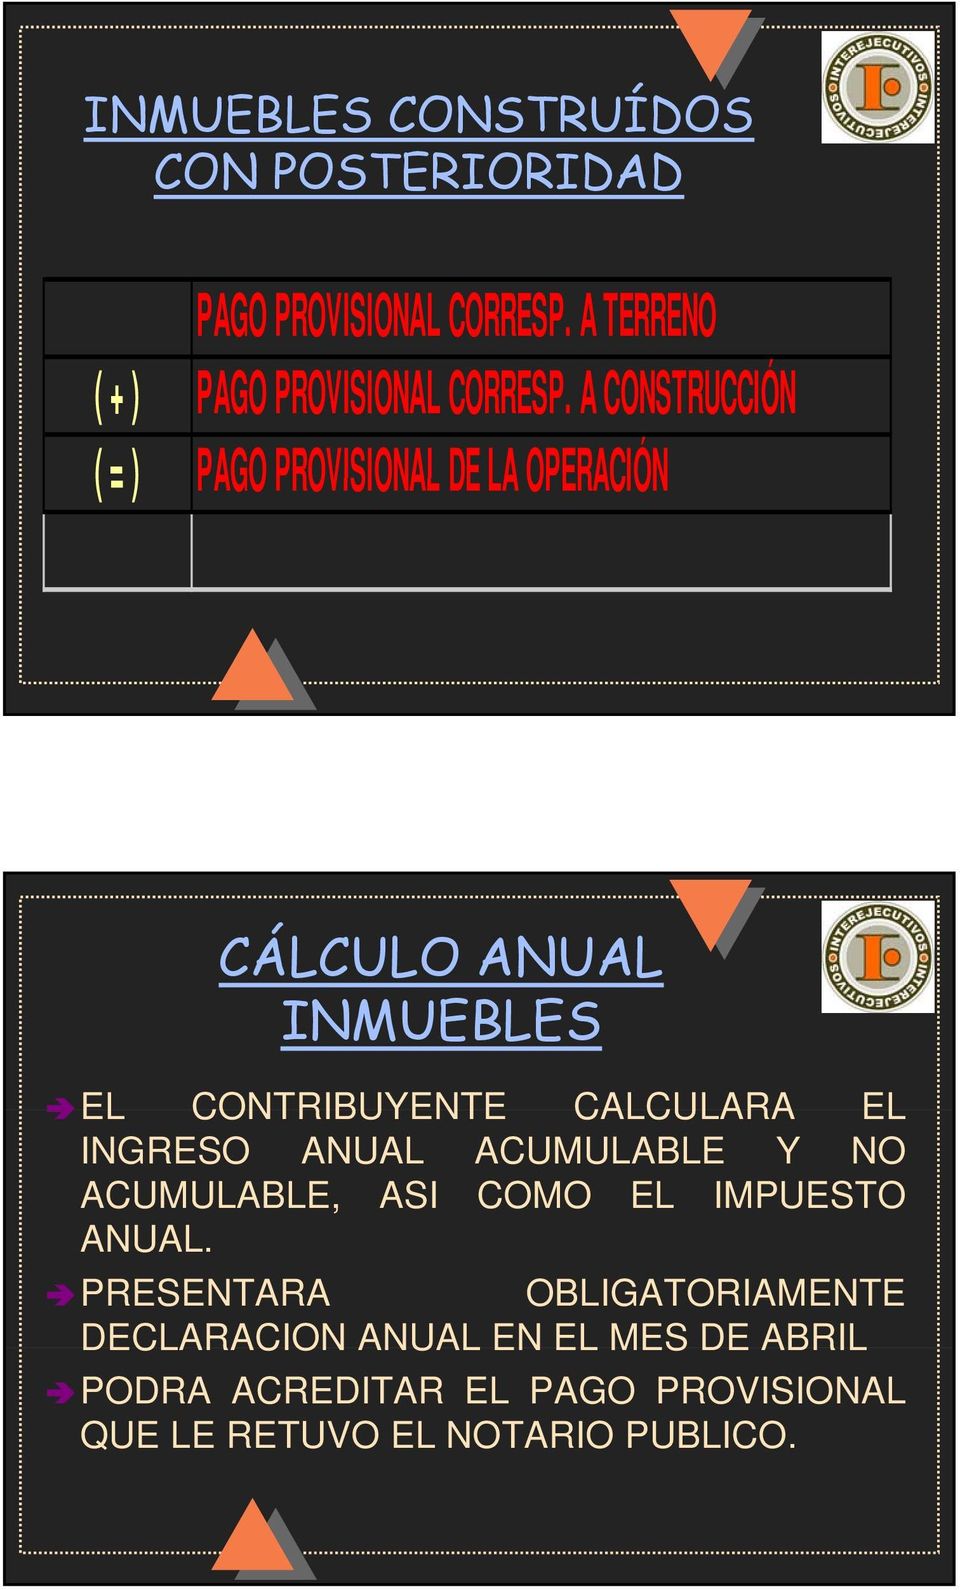 A CONSTRUCCIÓN (=) PAGO PROVISIONAL DE LA OPERACIÓN CÁLCULO ANUAL INMUEBLES EL CONTRIBUYENTE CALCULARA